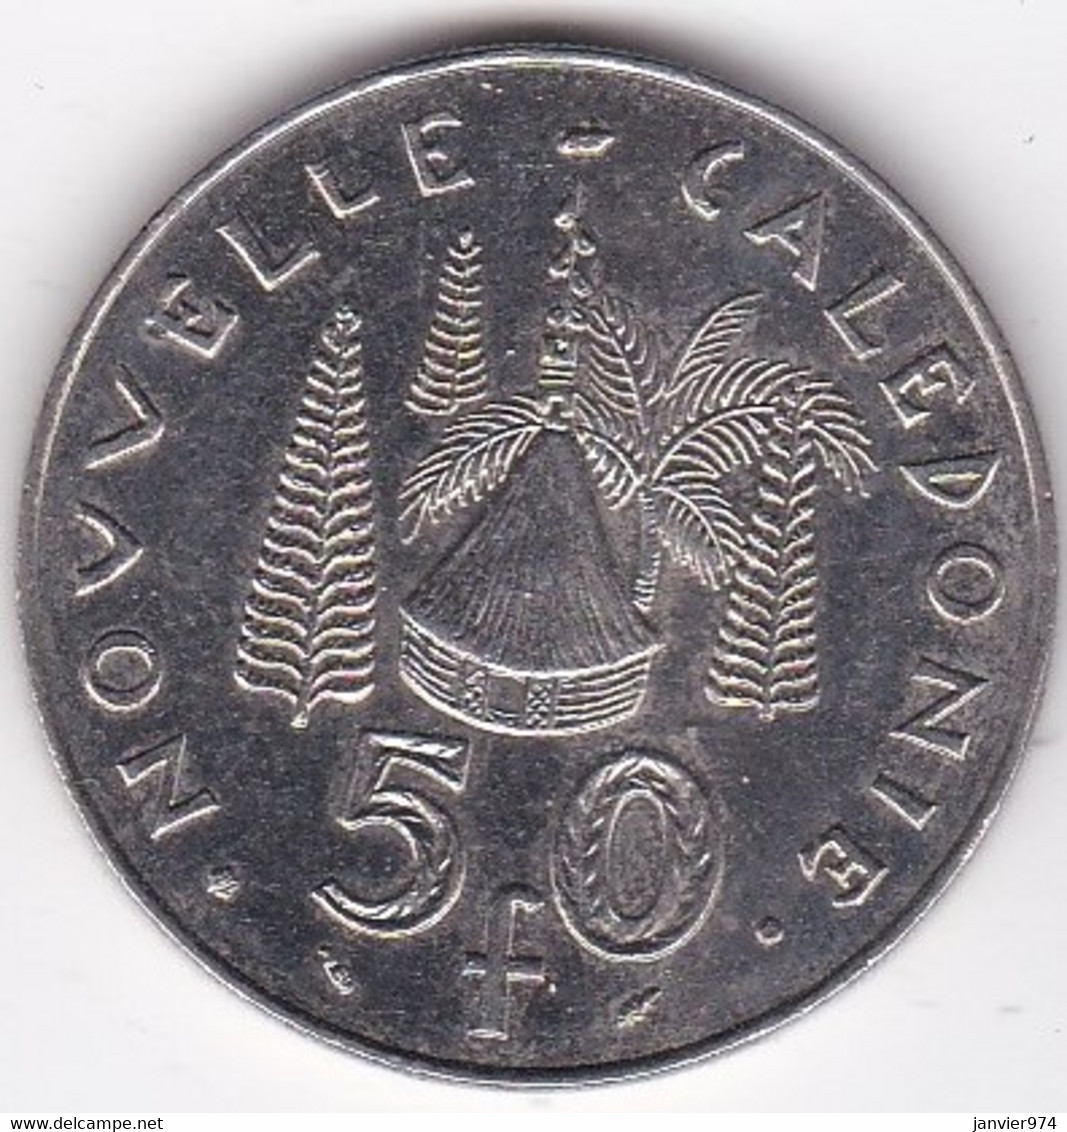 Nouvelle-Calédonie . 50 Francs 1991. En Nickel - Nueva Caledonia